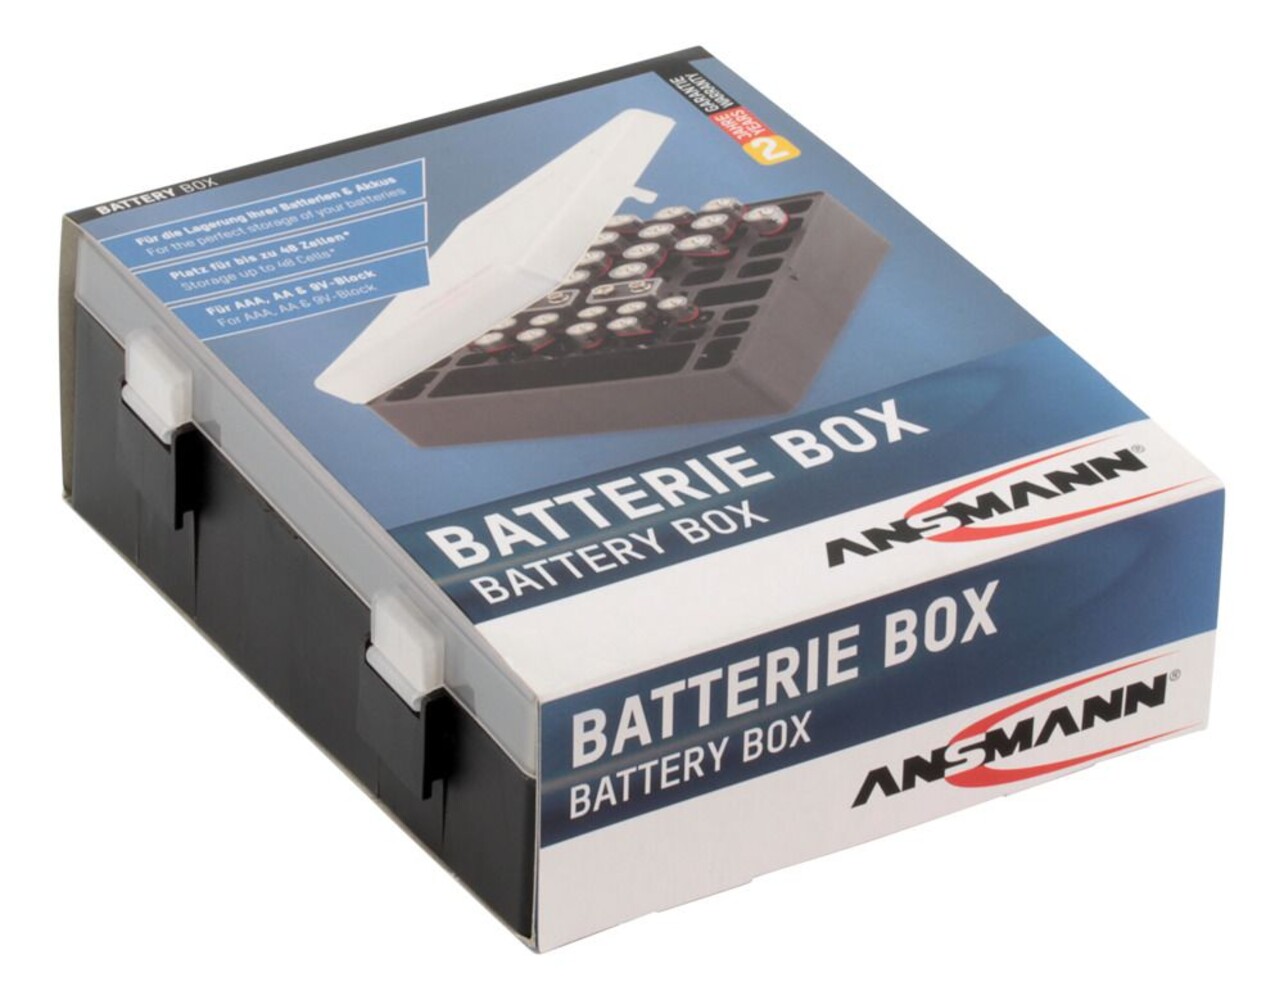 Batteriebox für AAA Micro, AA Mignon & 9V Block Akkus und Batterien - Praktische Akkubox zum Schutz & Transport für 48 Accus - Batterie Box & Akku Box zur Aufbewahrung - 5 Stück, schwraz